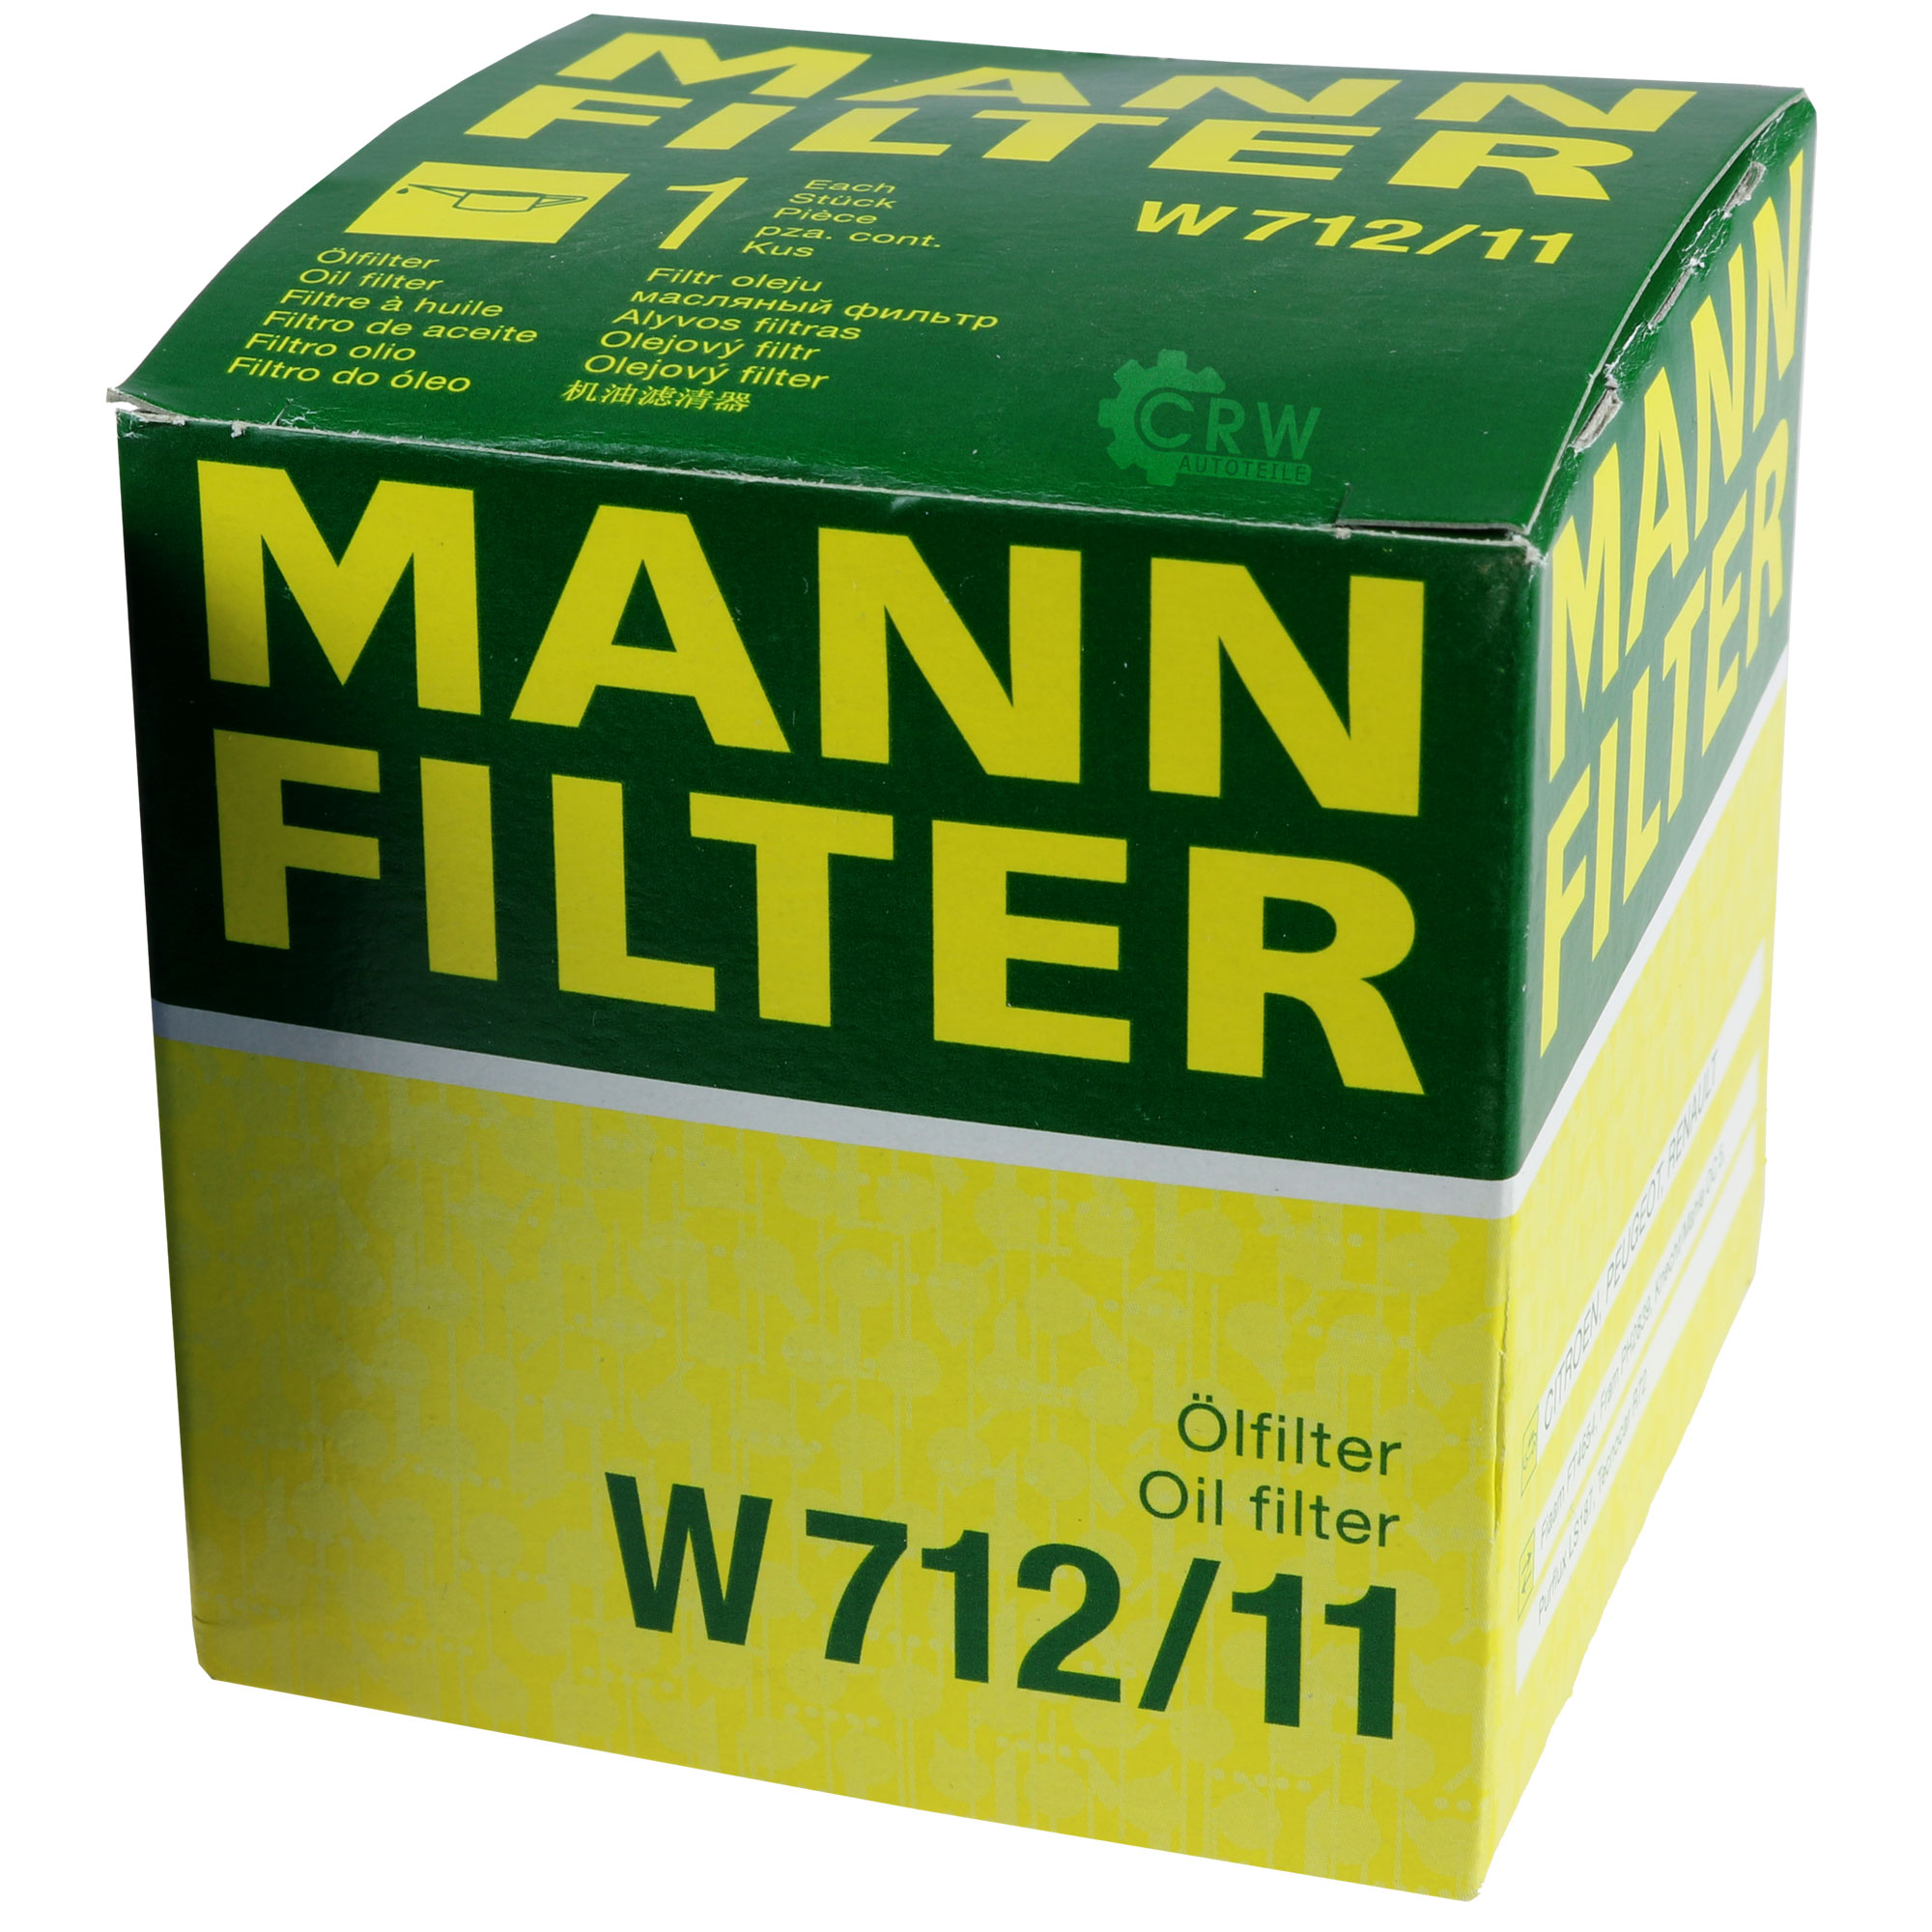 MANN-FILTER Ölfilter W 712/11 Oil Filter